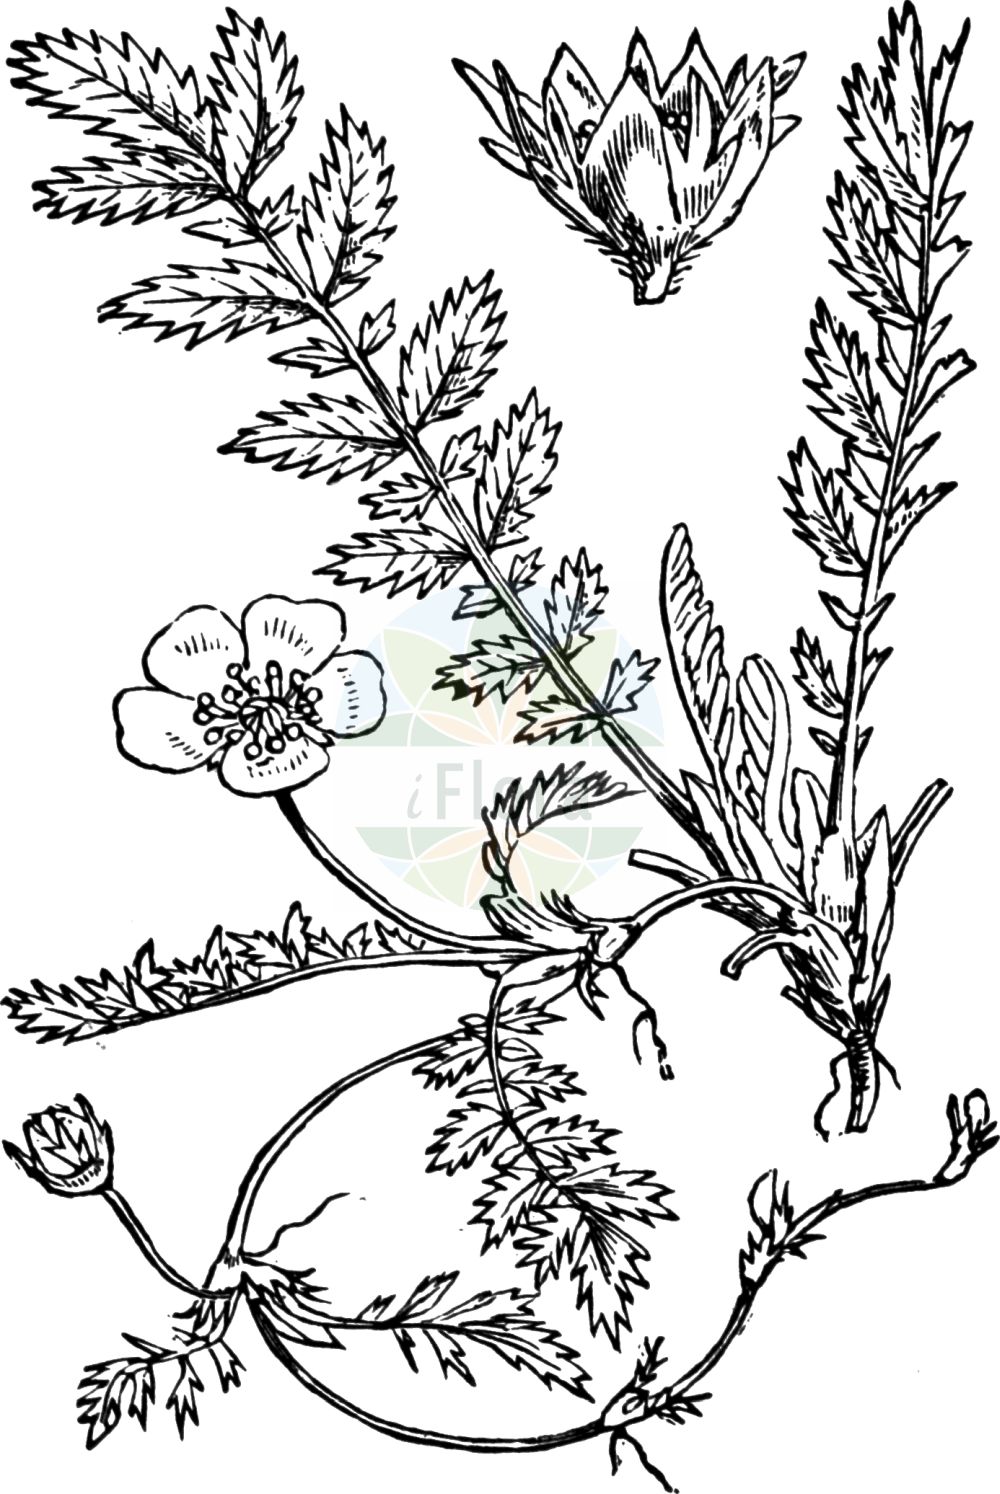 Historische Abbildung von Argentina anserina (Gänse-Fingerkraut - Silverweed). Das Bild zeigt Blatt, Bluete, Frucht und Same. ---- Historical Drawing of Argentina anserina (Gänse-Fingerkraut - Silverweed). The image is showing leaf, flower, fruit and seed.(Argentina anserina,Gänse-Fingerkraut,Silverweed,Argentina anserina,Dactylophyllum anserina,Dasiphora anserina,Fragaria anserina,Potentilla anserina,Tormentilla anserina,Gaense-Fingerkraut,Anserine,Silverweed,Pacific Silverweed,Silverweed Cinquefoil,Argentina,Rosaceae,Rosengewächse,Rose family,Blatt,Bluete,Frucht,Same,leaf,flower,fruit,seed,Fitch et al. (1880))